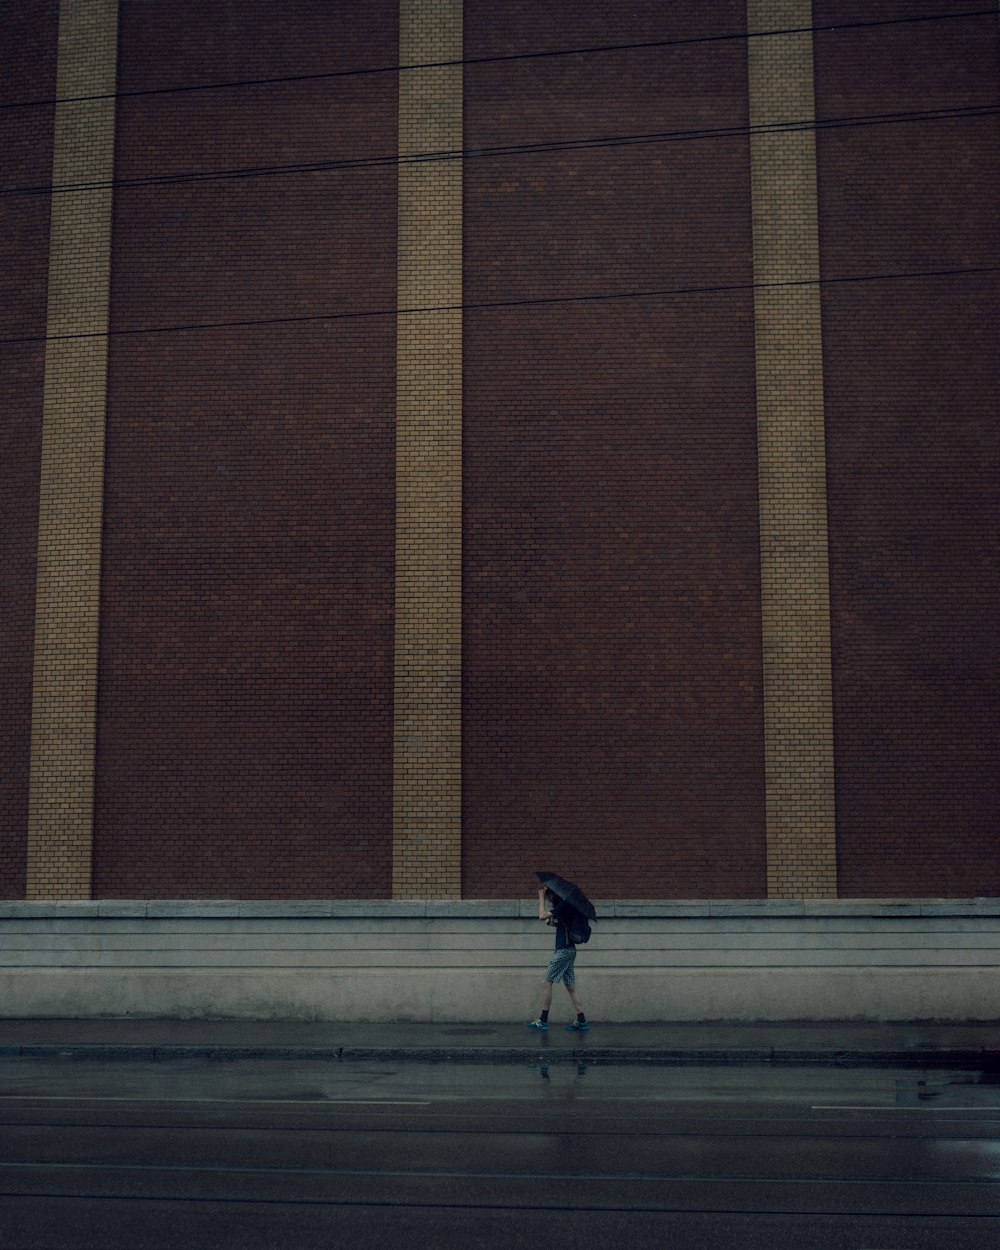 a person walking on a sidewalk